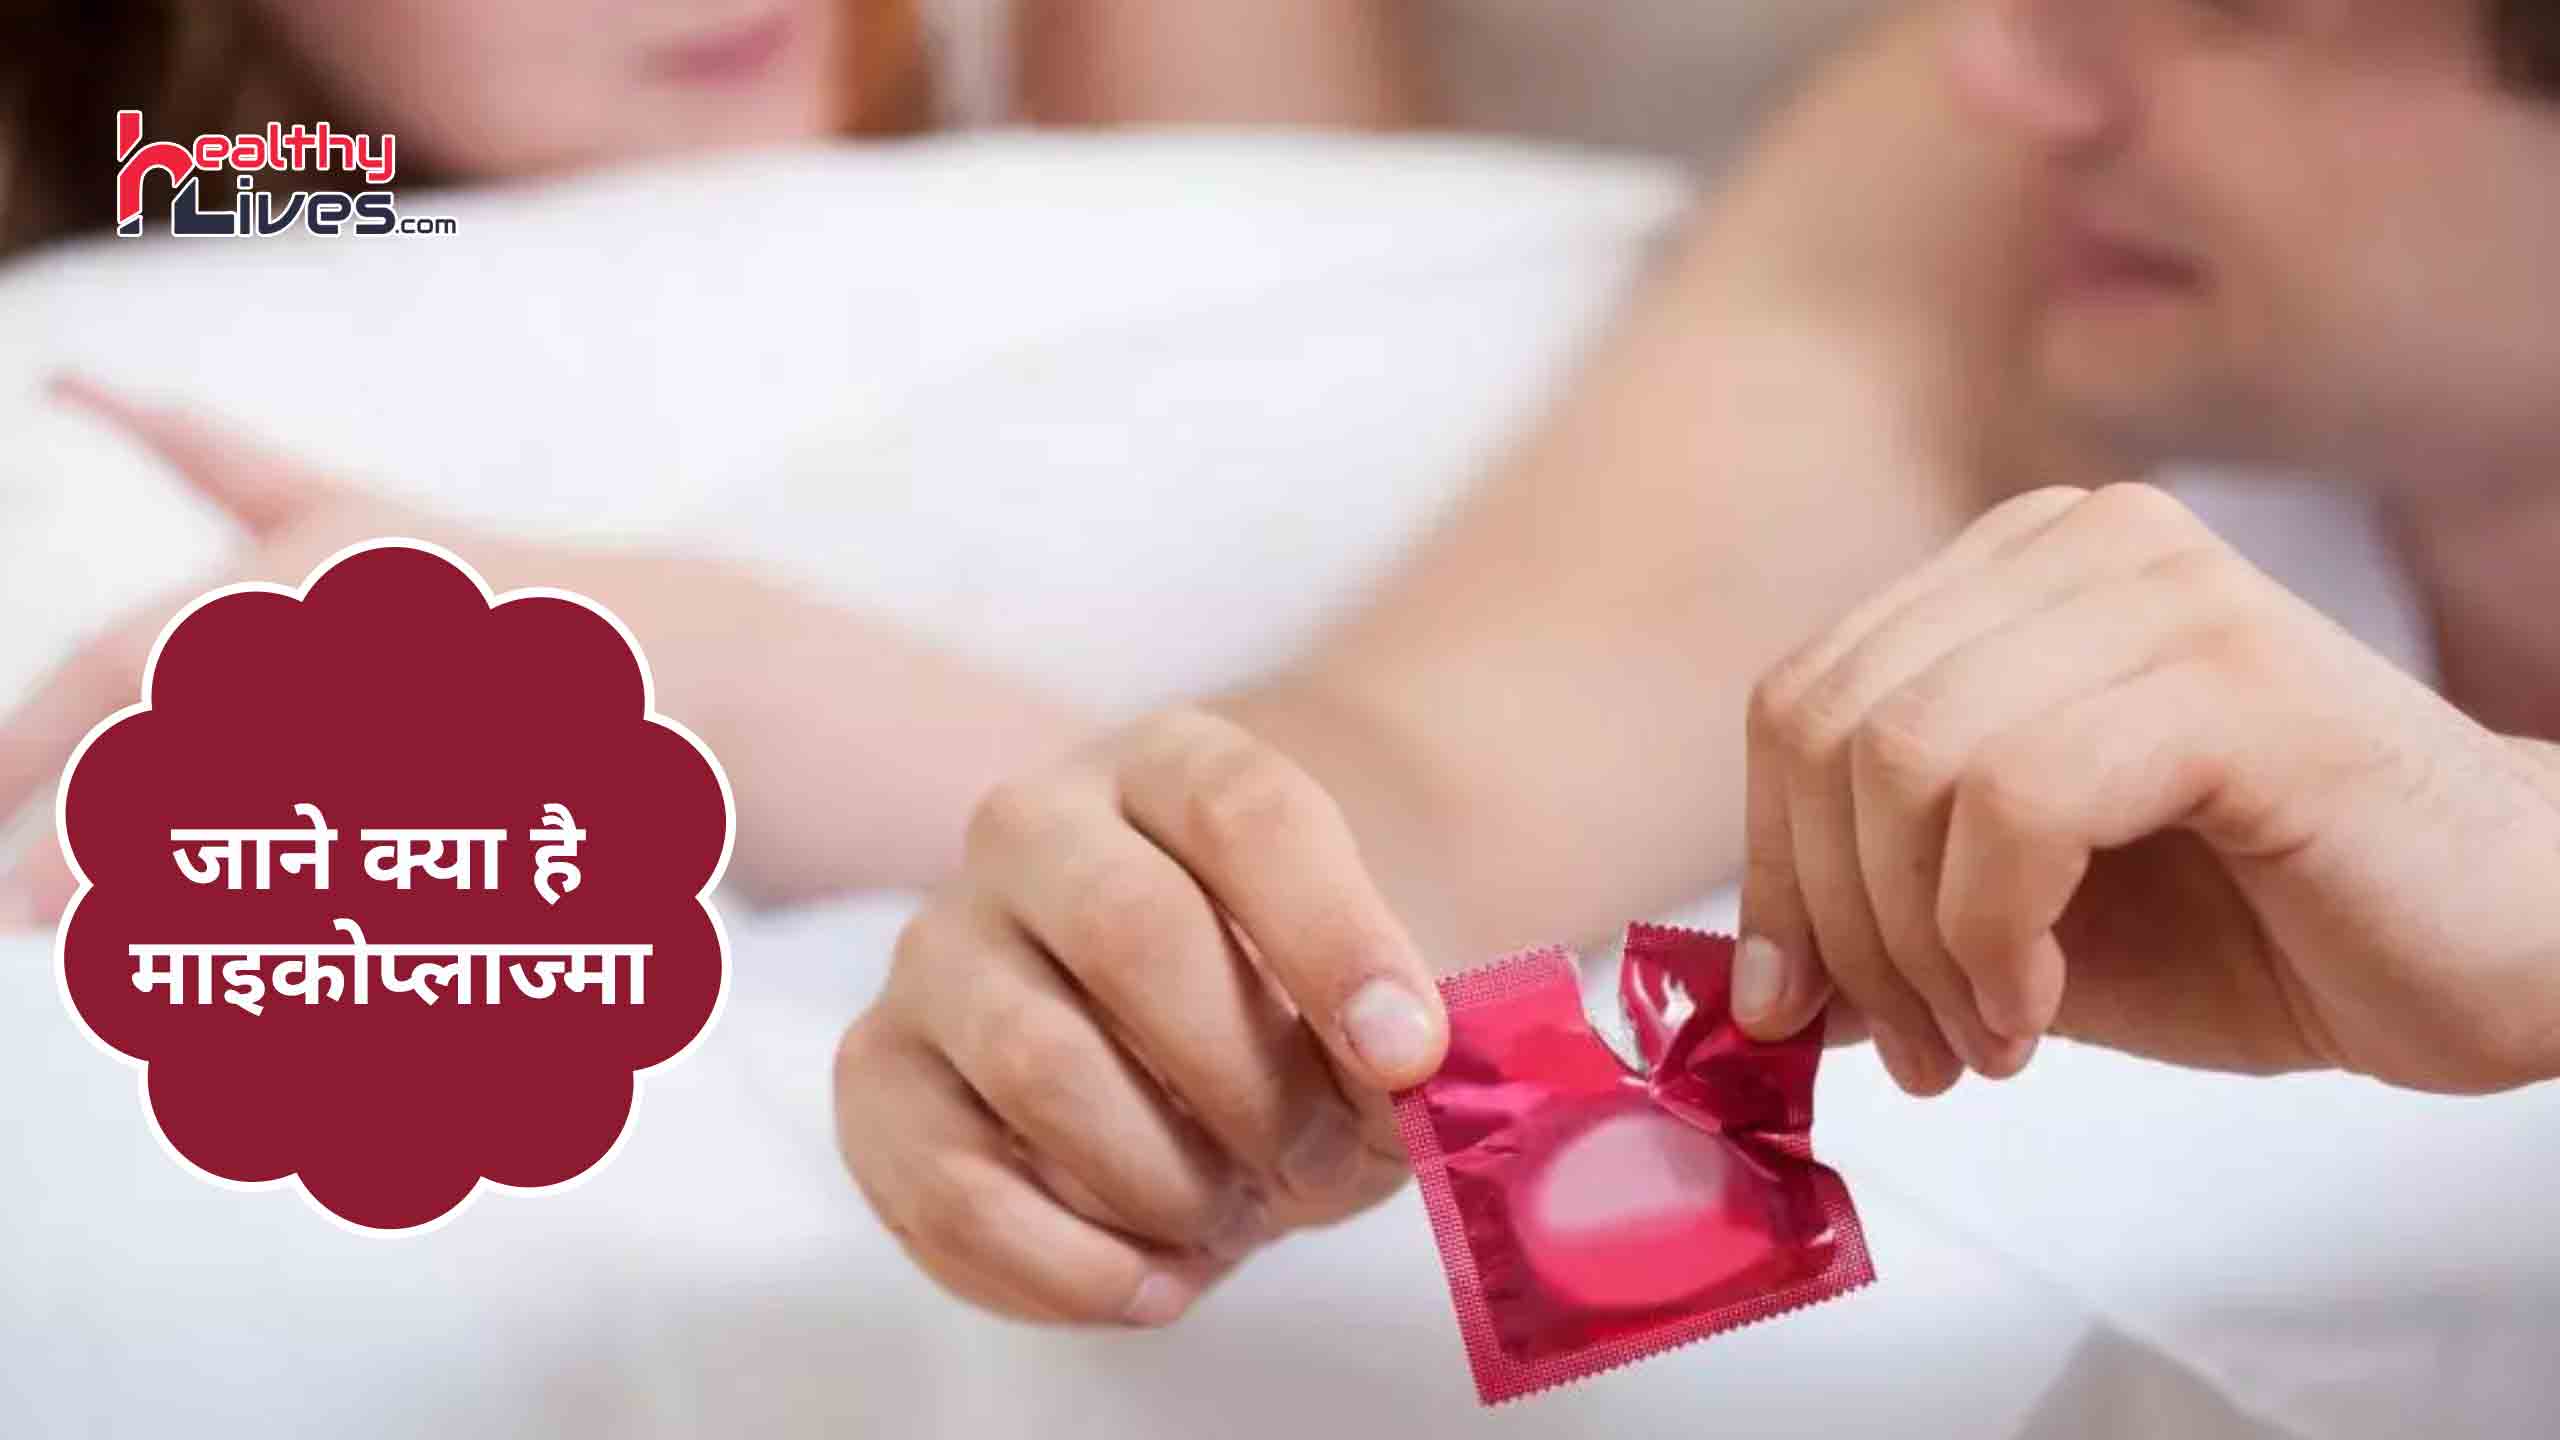 Mycoplasma in Hindi: असुरक्षित यौन सम्बन्ध से करे अपना और अपने साथी का बचाव